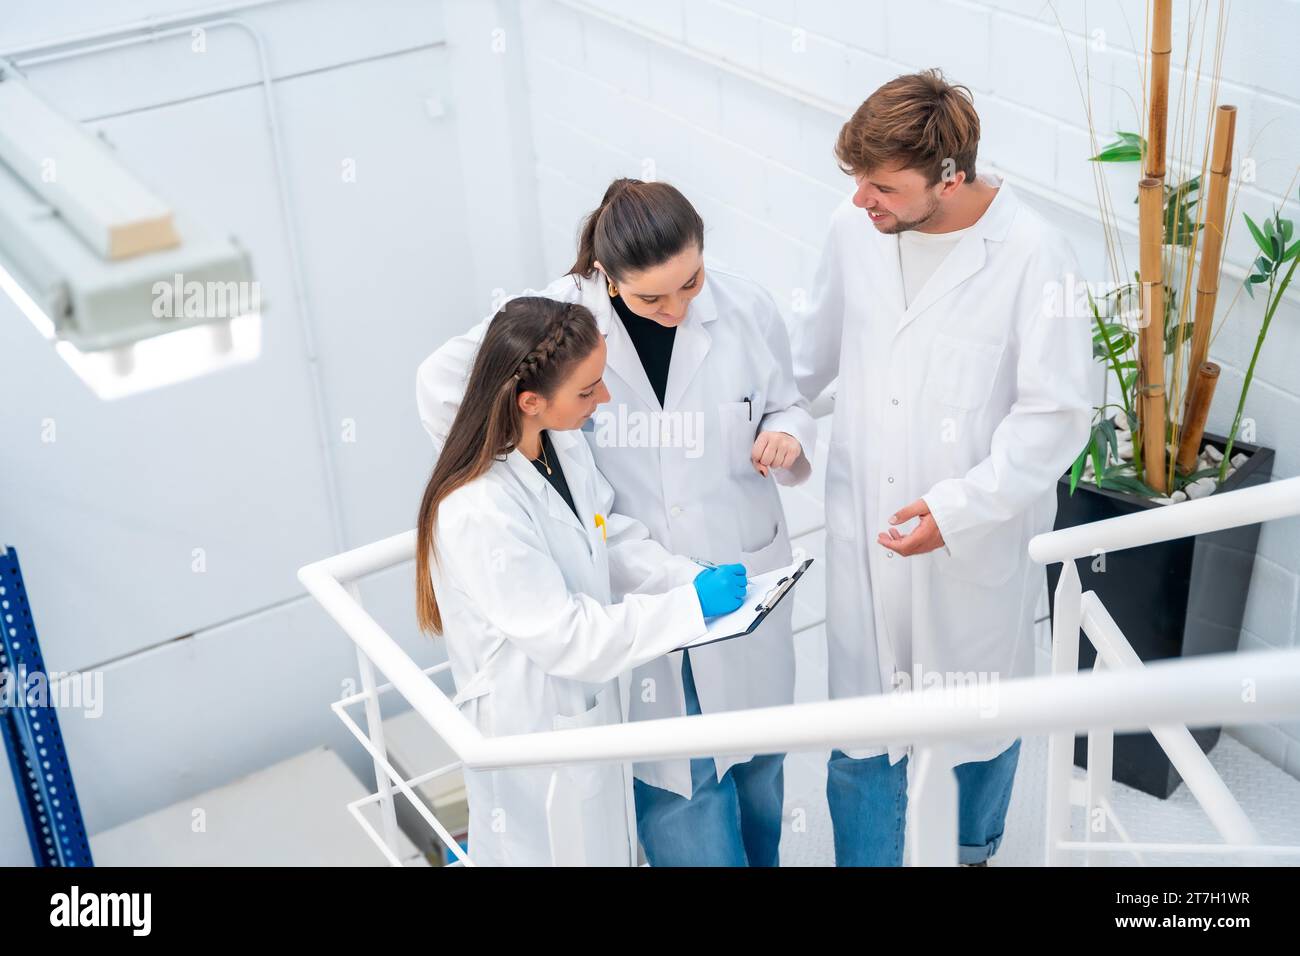 Draufsicht von drei Wissenschaftlern, die auf der Treppe eines Krebsforschungslabors sprechen und arbeiten Stockfoto